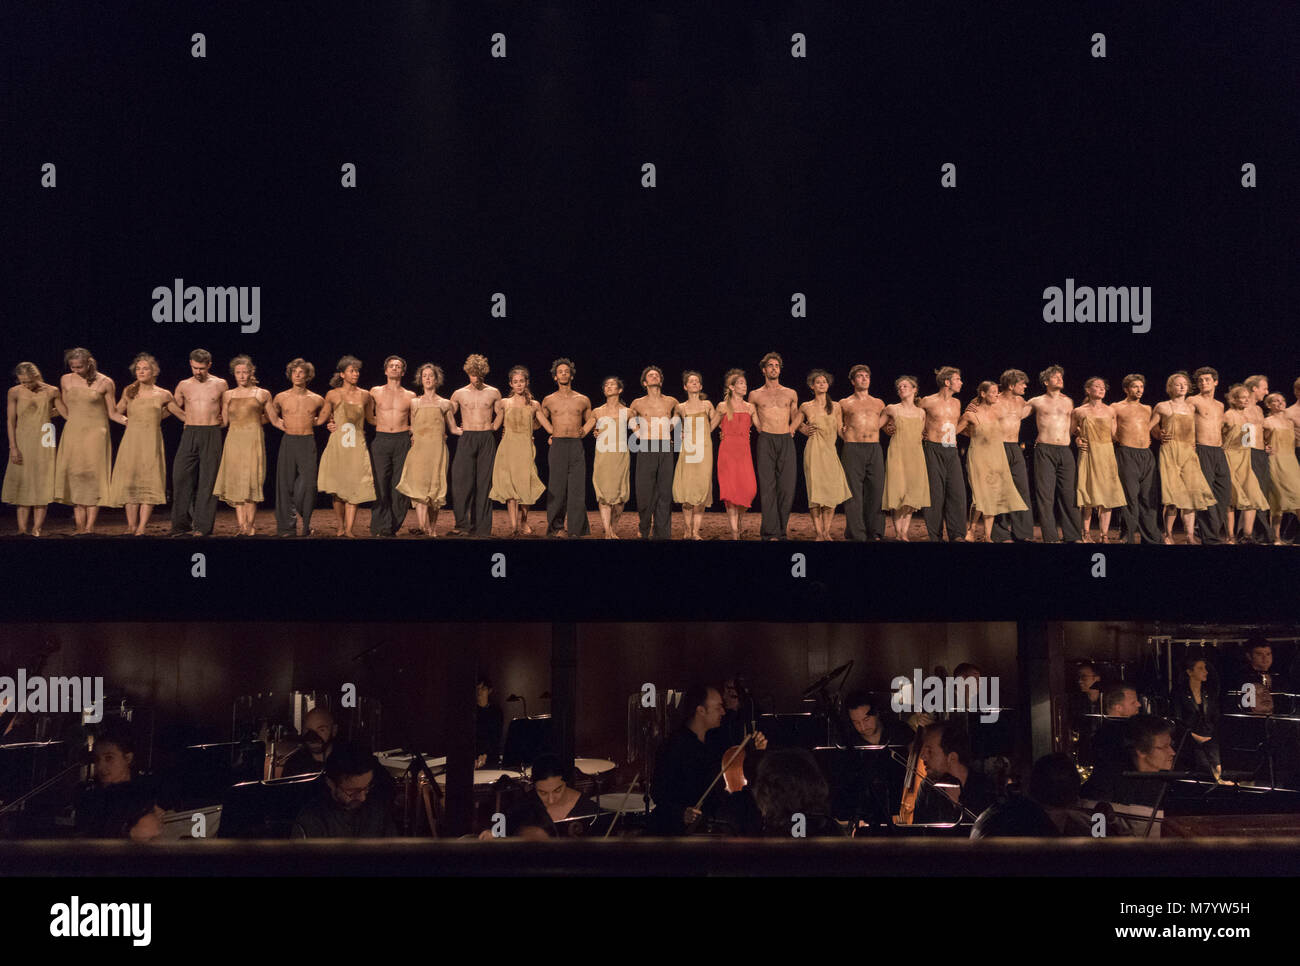 Curtain Call per prestazioni di balletto di Stravinsky è il rito della molla (Le sacre du printemps) al Palais Garnier opera house, Parigi, Francia Foto Stock